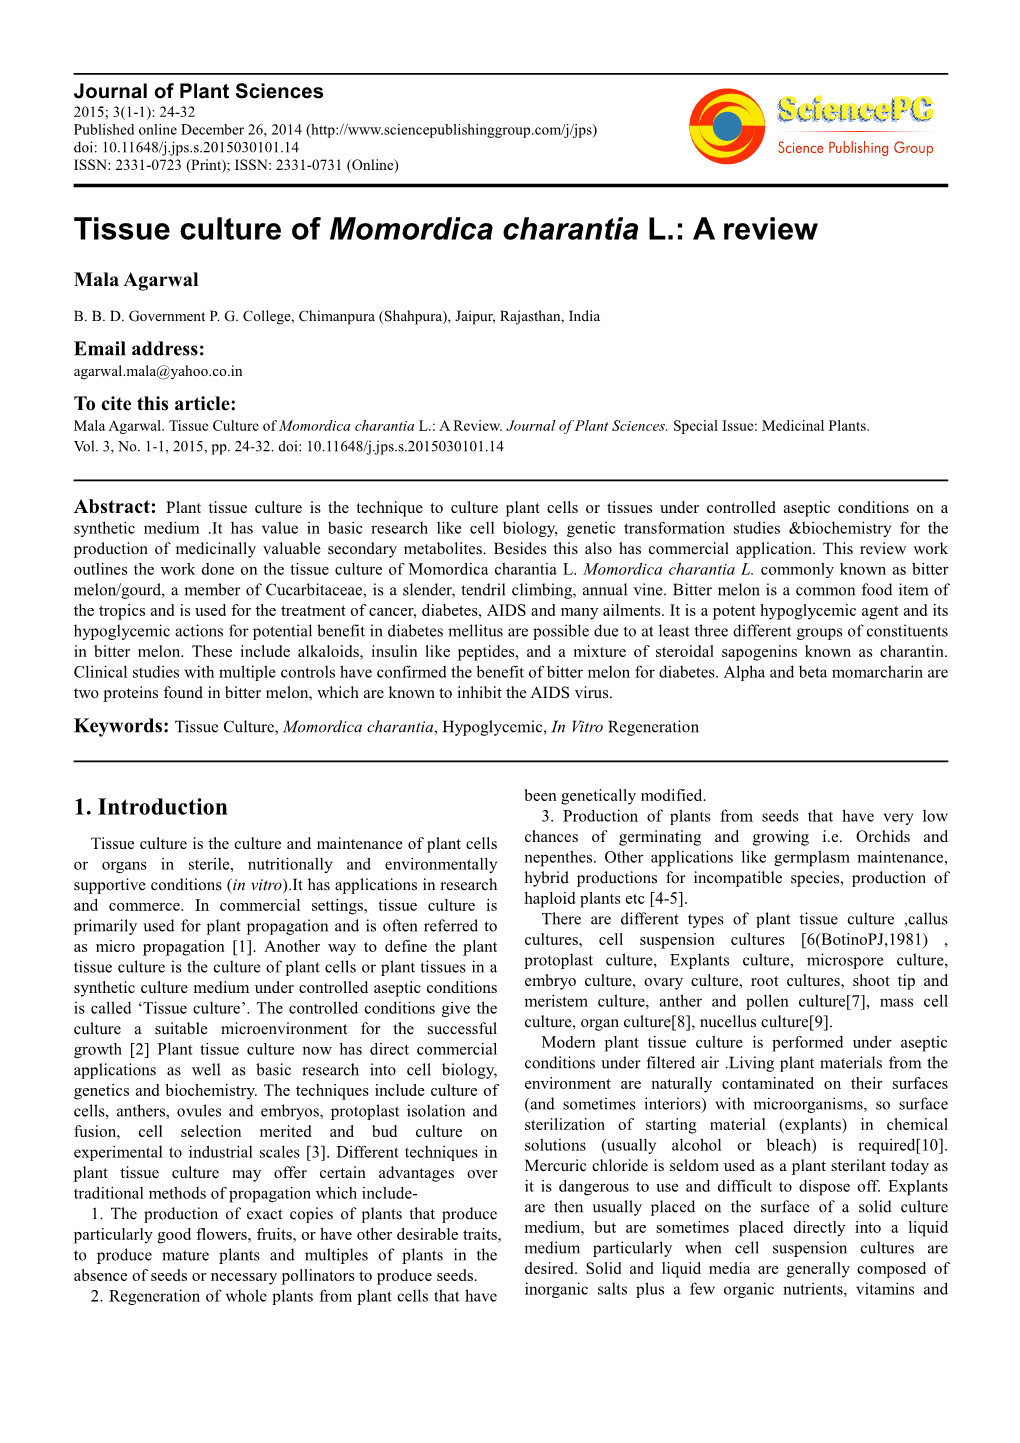 Tissue Culture of Momordica Charantia L.: a Review